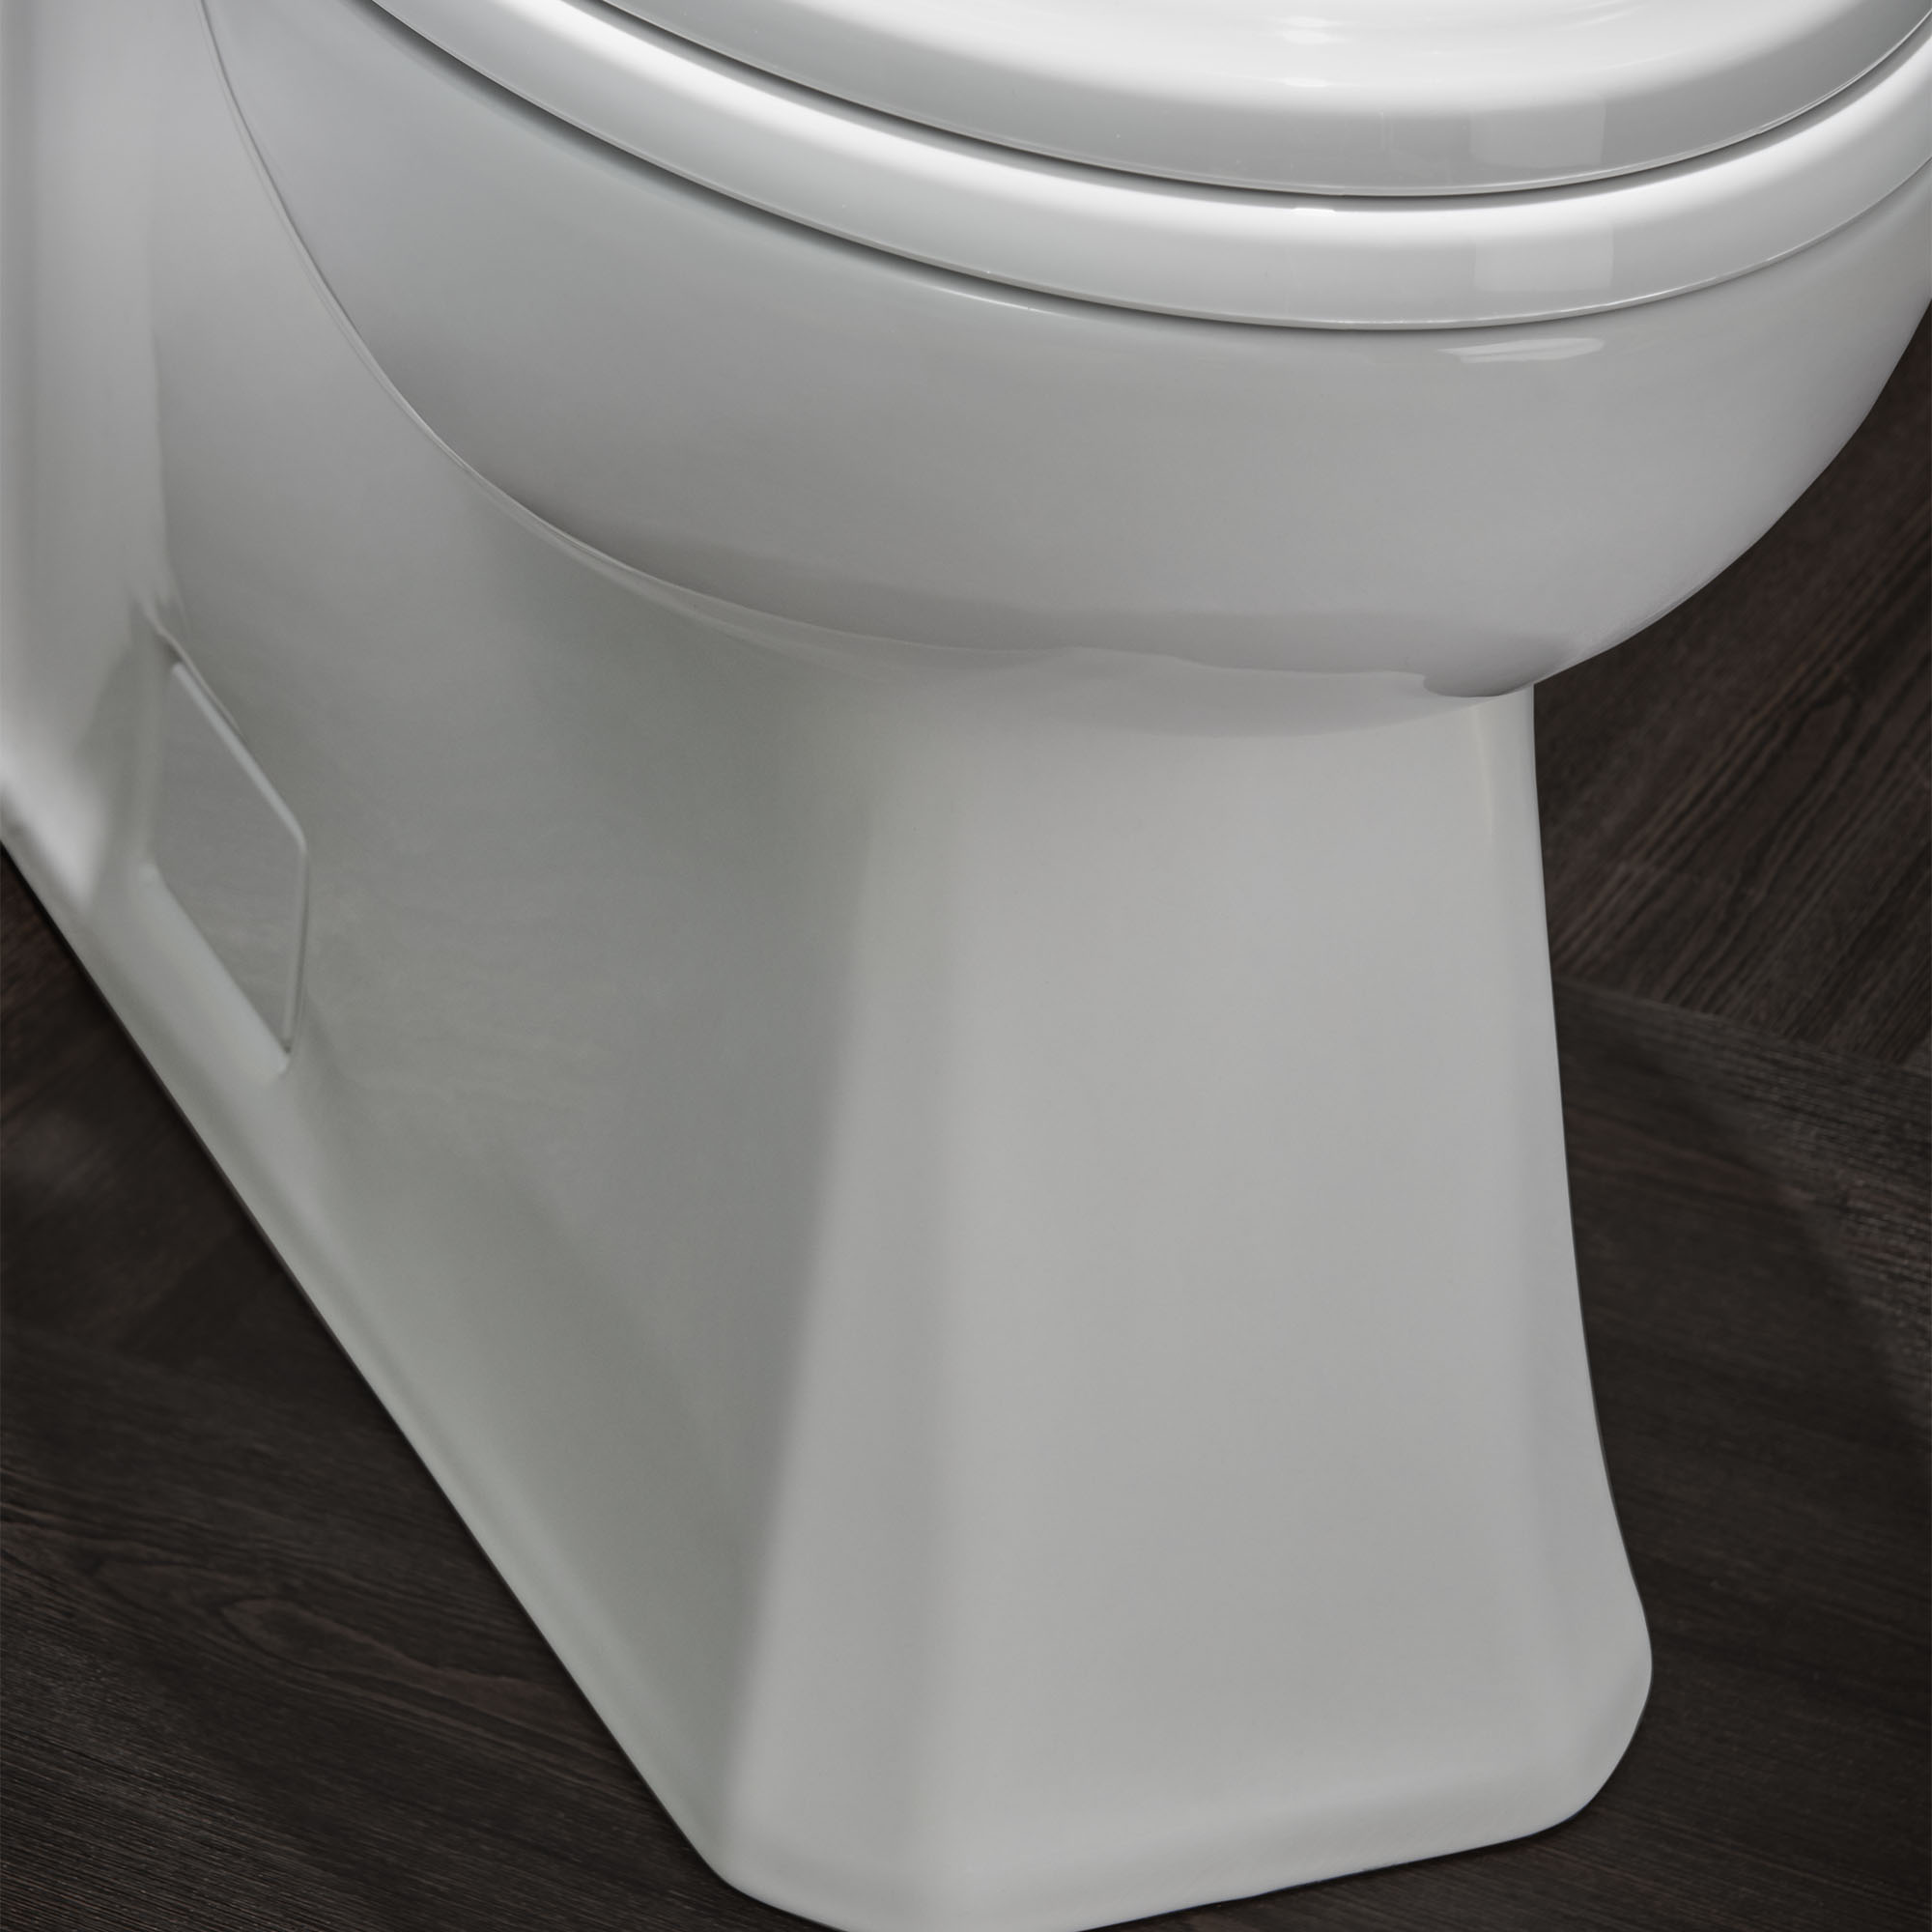 Toilette Belshire monopièce à cuvette allongée à hauteur de chaise avec siège